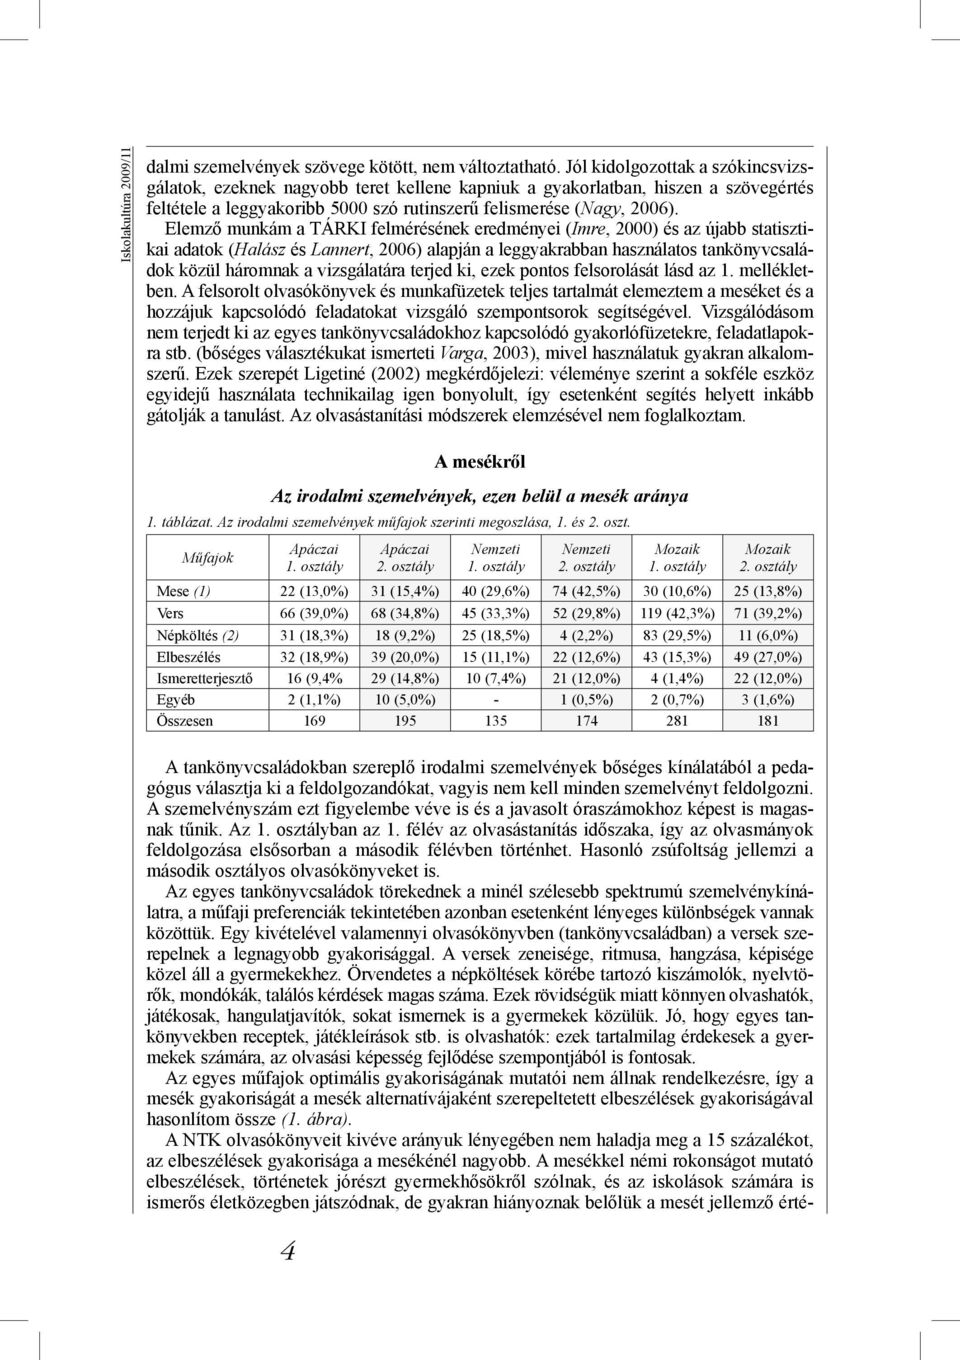 Elemző munkám a TÁRKI felmérésének eredményei (Imre, 2000) és az újabb statisztikai adatok (Halász és Lannert, 2006) alapján a leggyakrabban használatos tankönyvcsaládok közül háromnak a vizsgálatára